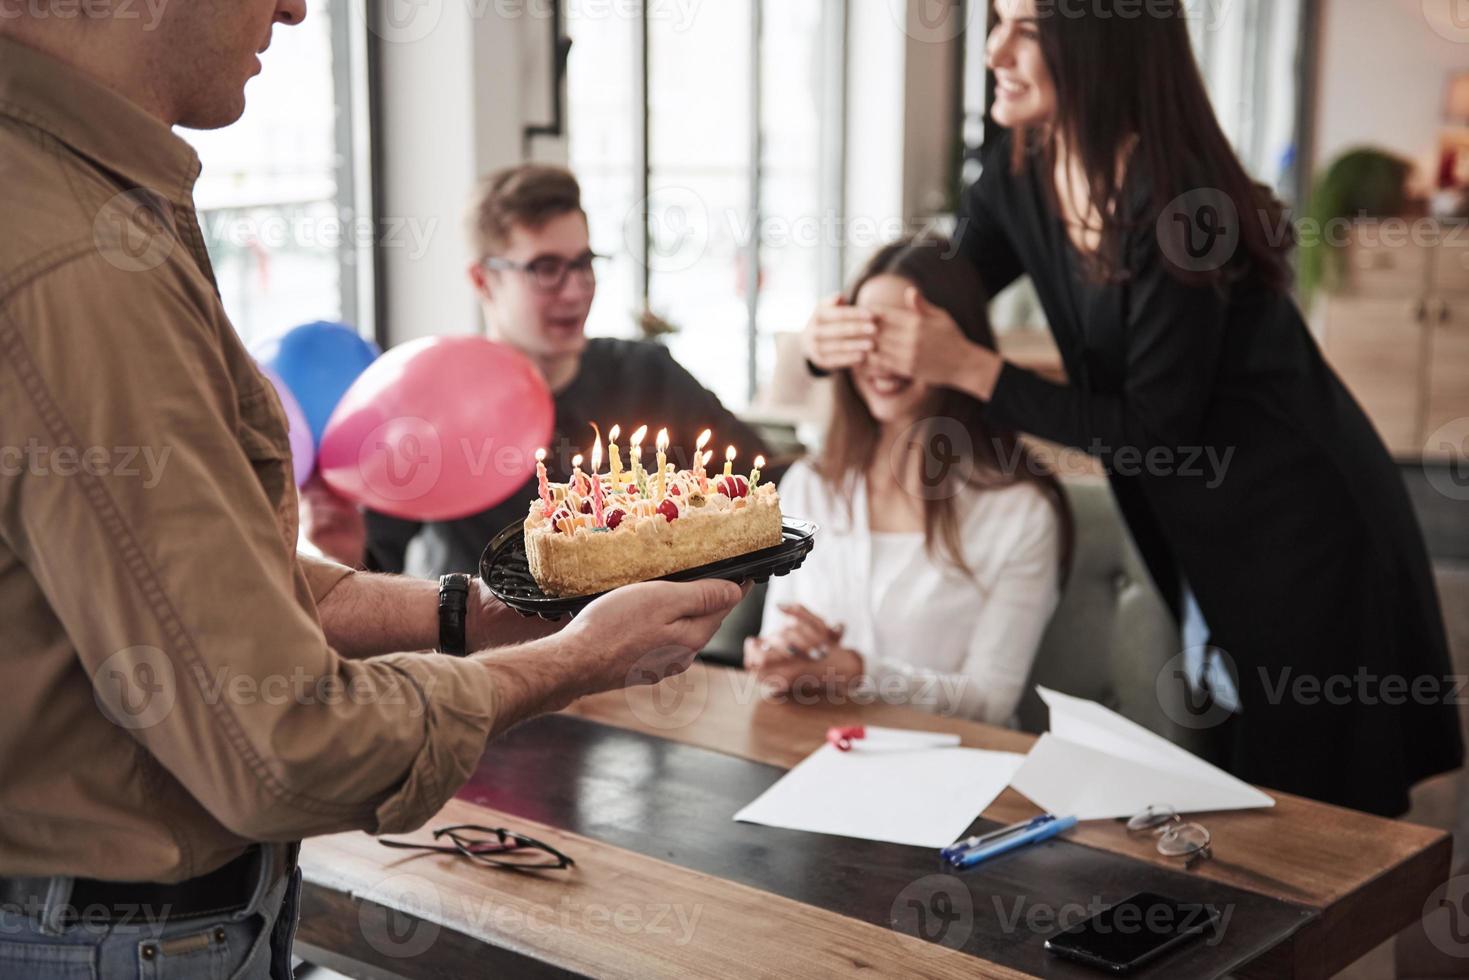 fermer les yeux de la jeune fille brune. l'un des employés fête son anniversaire aujourd'hui. des collègues amicaux décident de lui faire une surprise photo